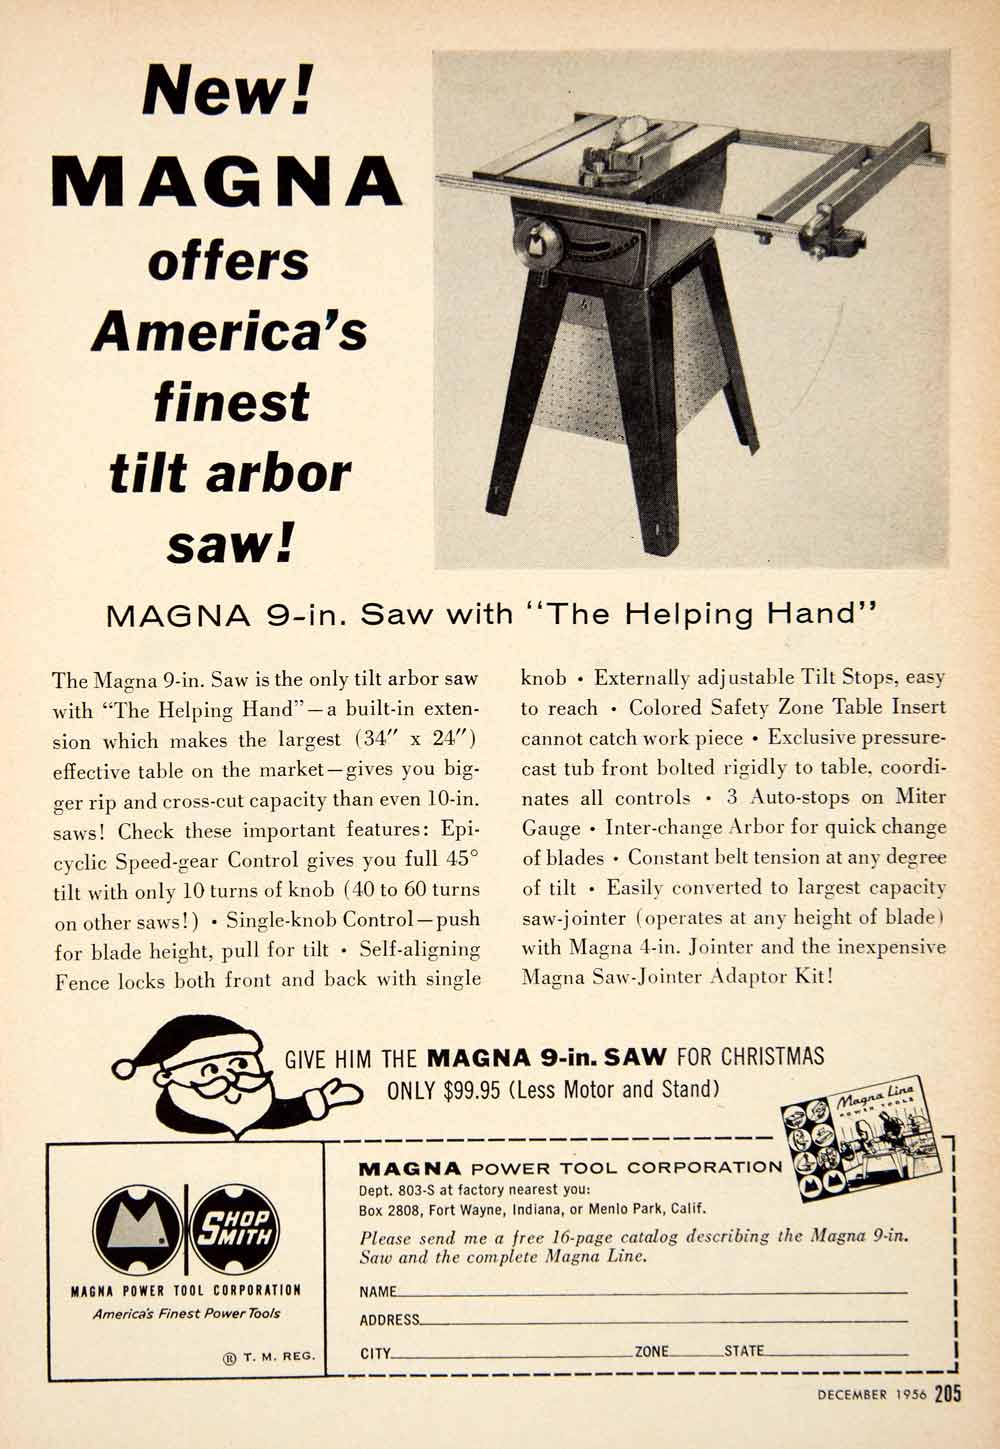 Black & Decker Manufacturing Co., Ltd. - 1959 Ad - B&D U-10 jig saw